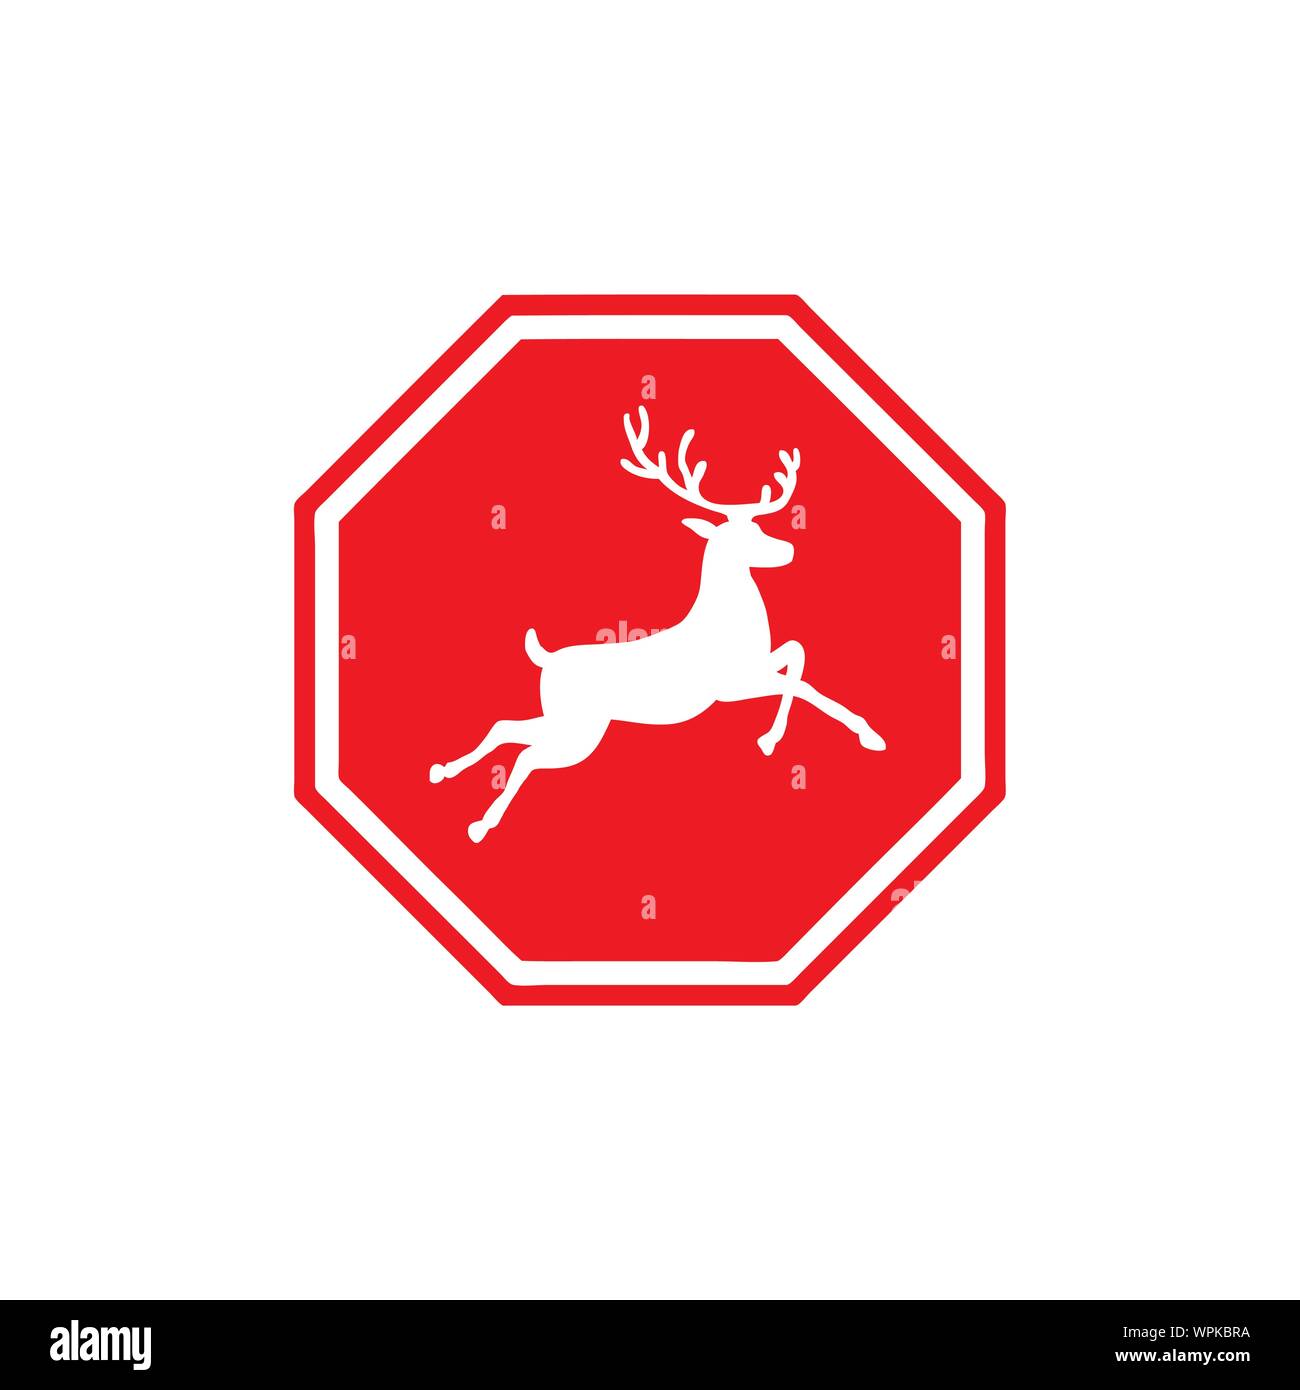 Beware of the Deer Stock Vector